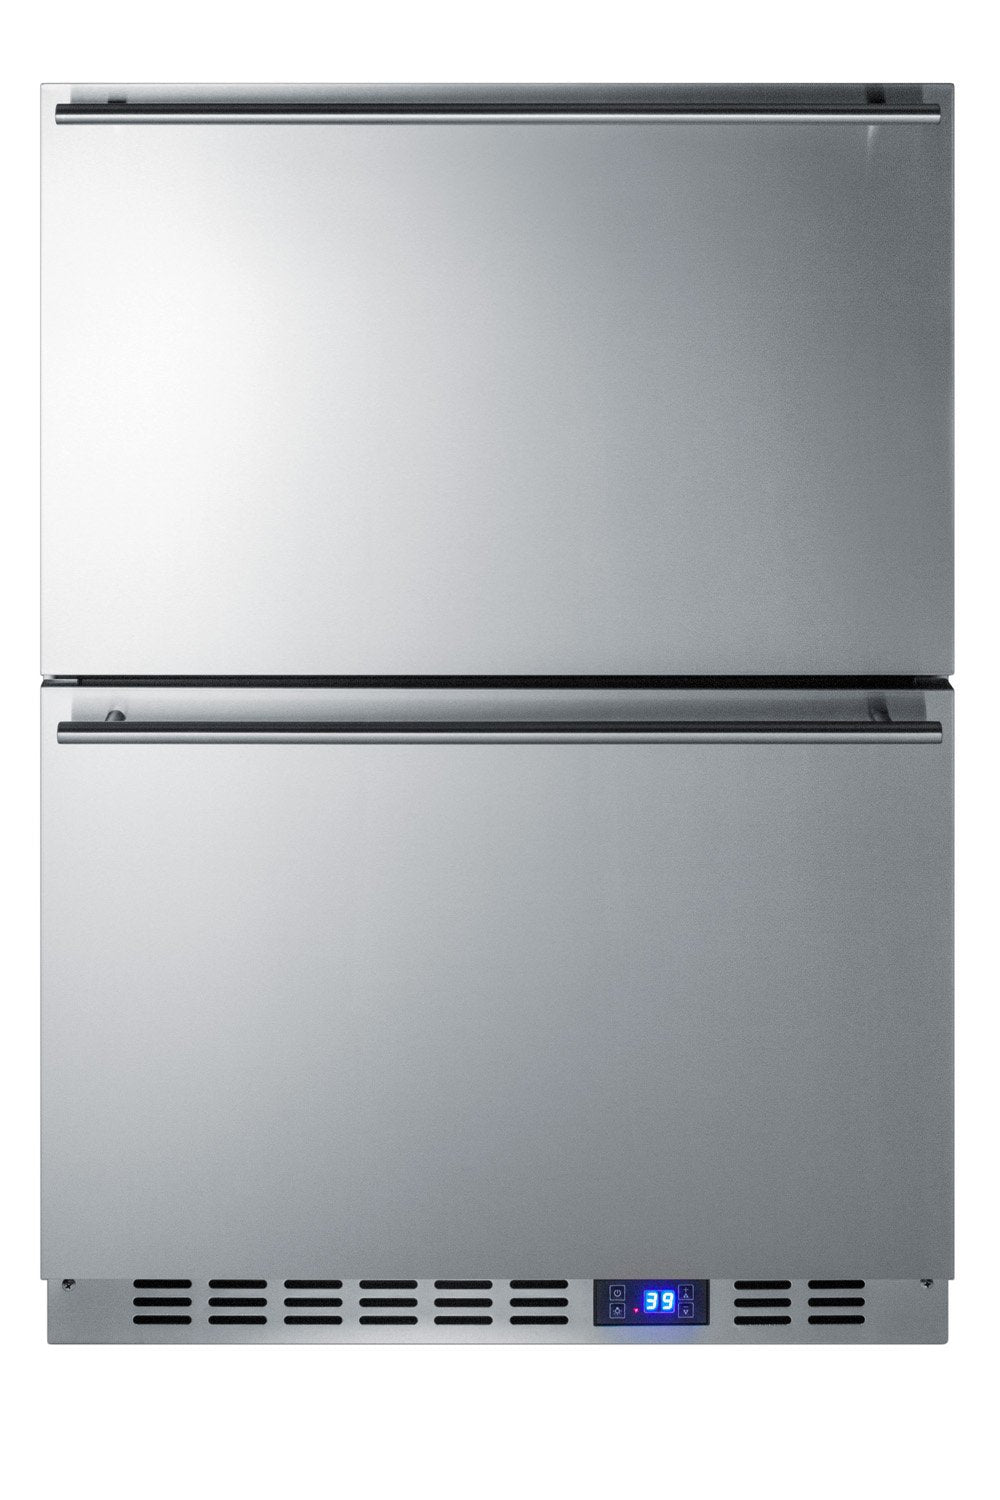 SUMMIT 24" Wide 2-Drawer All-Refrigerator